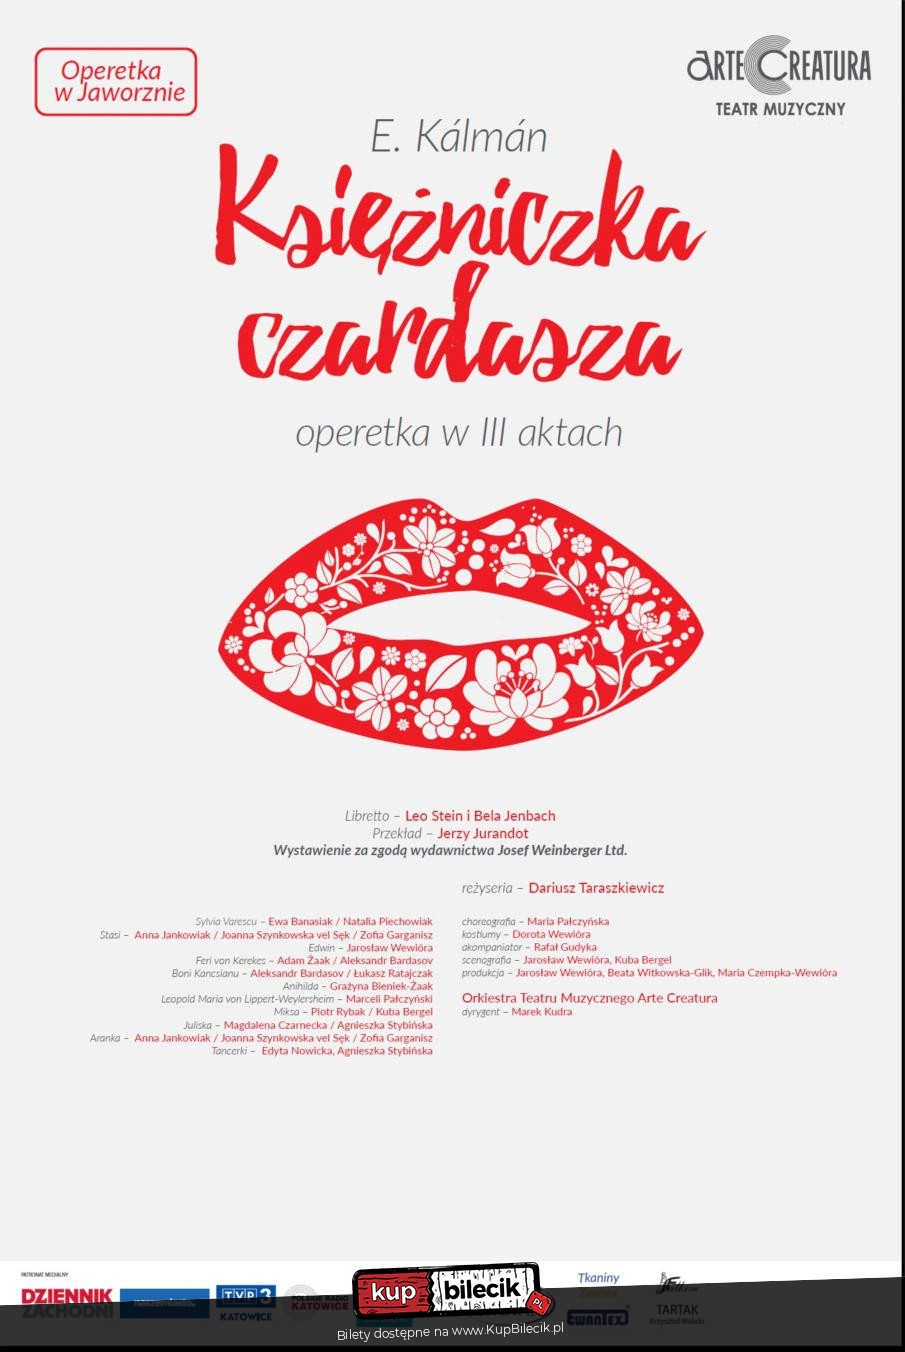 Plakat Księżniczka czardasza I.Kalman operetka - Arte Creatura Teatr Muzyczny 100230